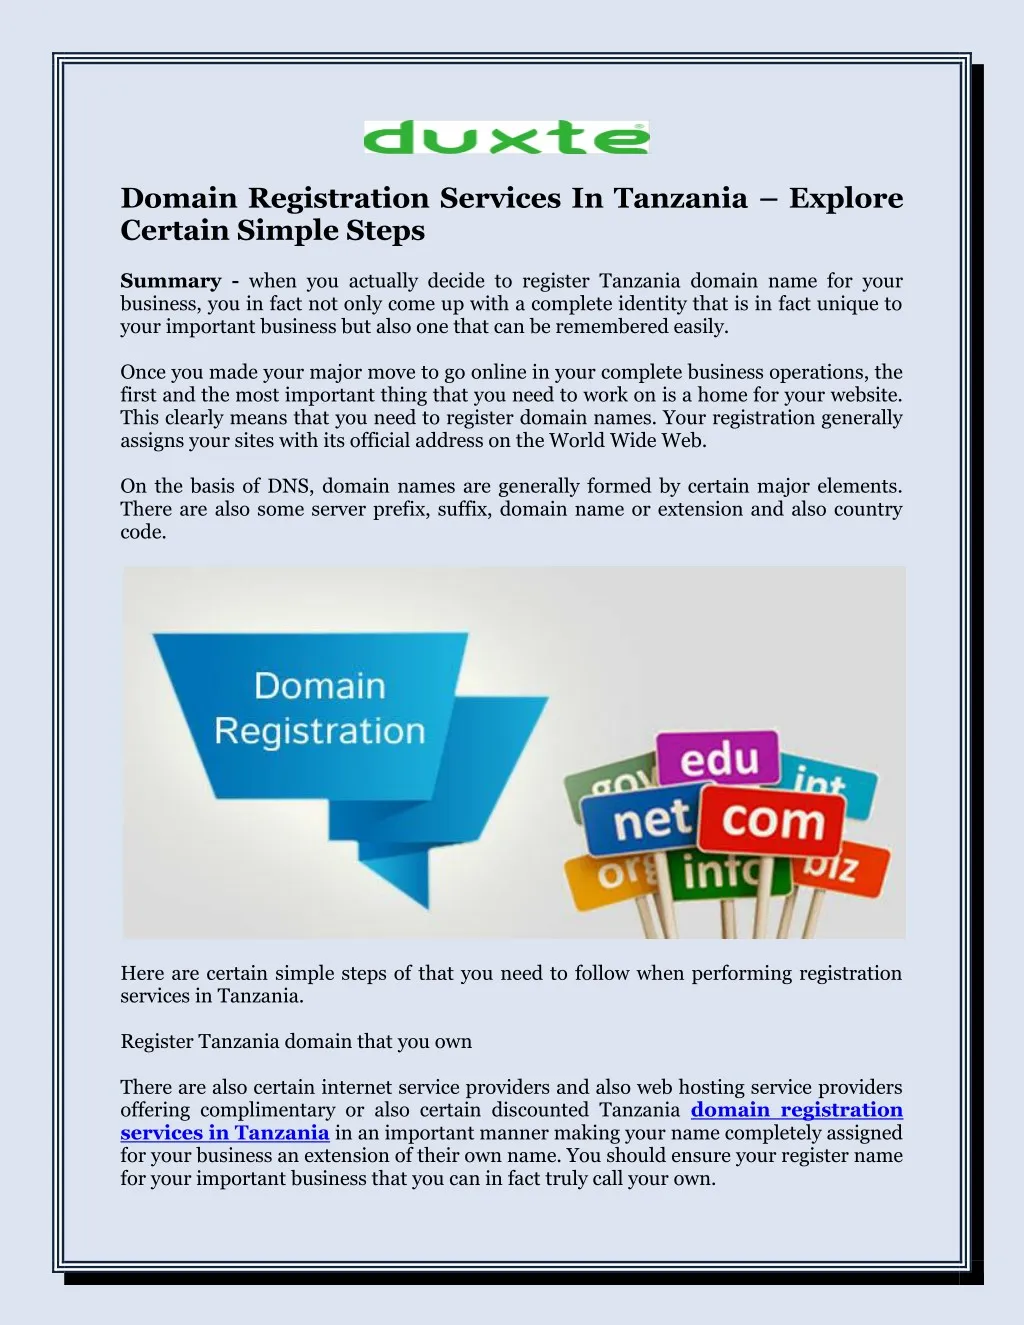 domain registration services in tanzania explore